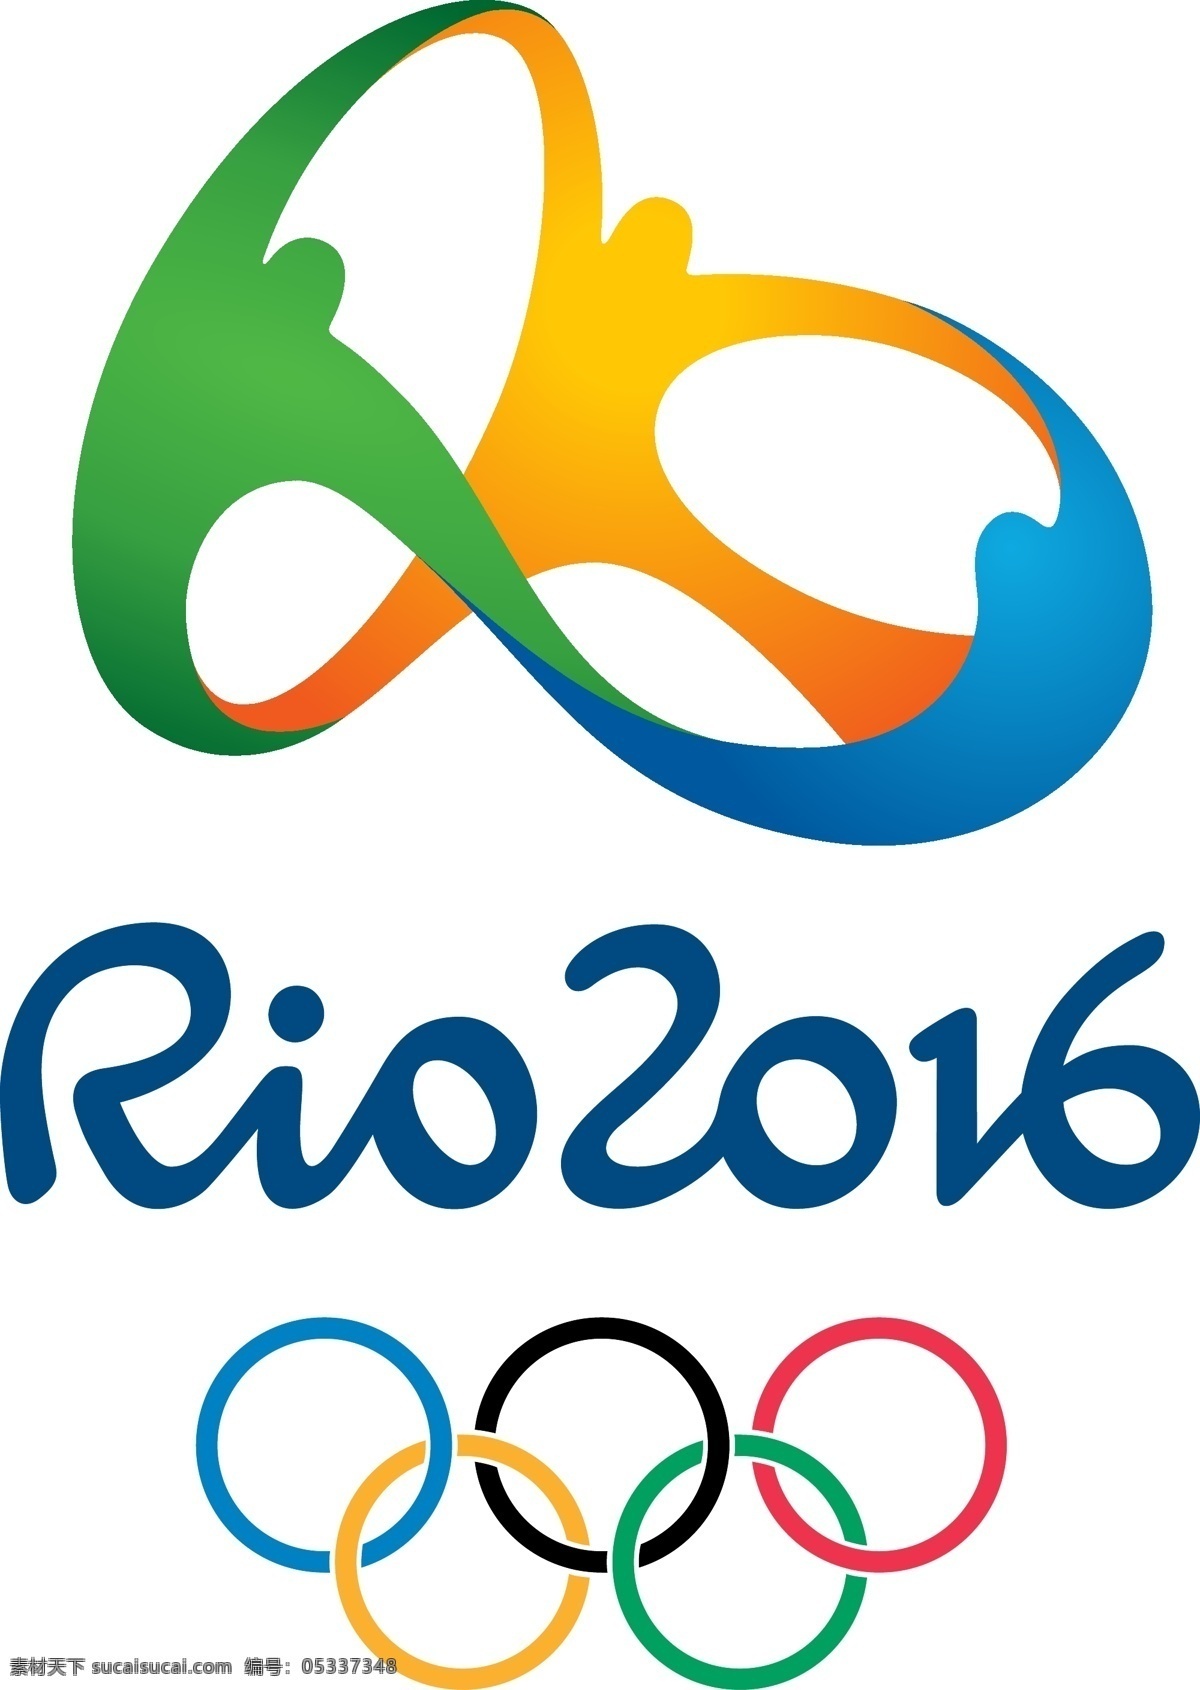 2016 奥运 标志 奥运会 里约热内卢 rio 申奥 logo 体育运动 文化艺术 公共标识标志 标识标志图标 矢量